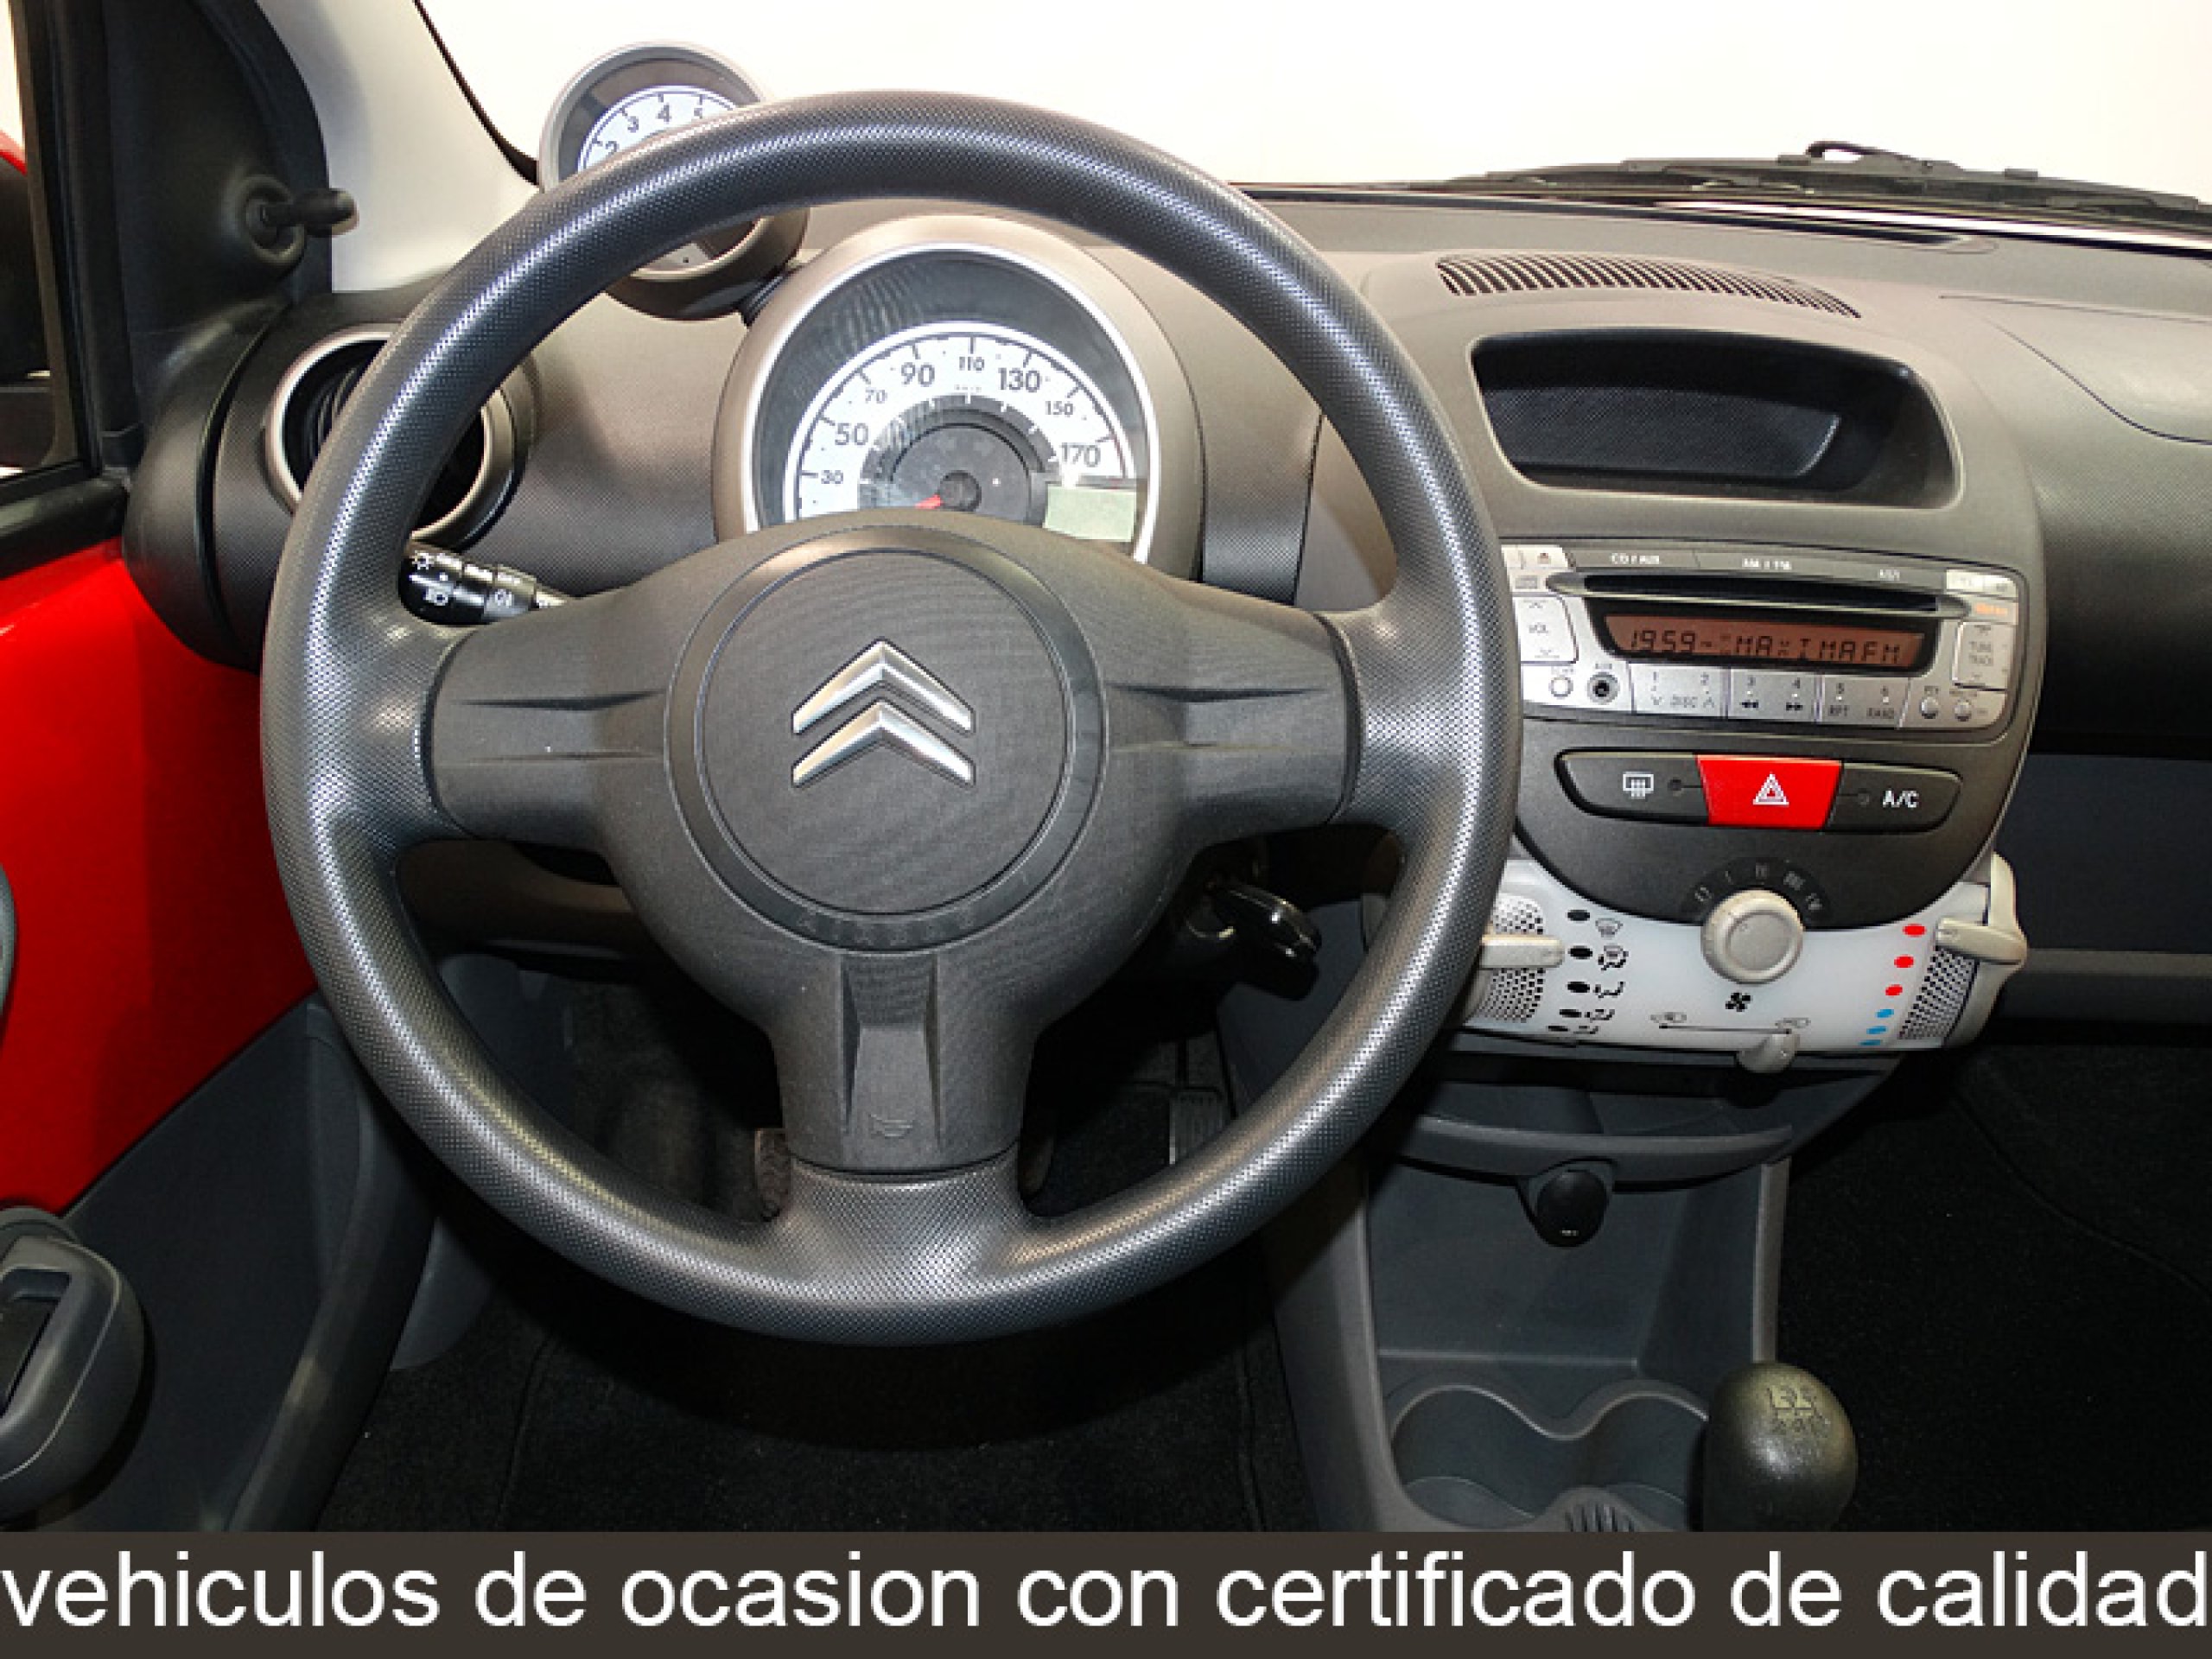 Oferta de Citroen C1 1.0 Seduction 50 kW (68 CV) en Canalcar (10933)